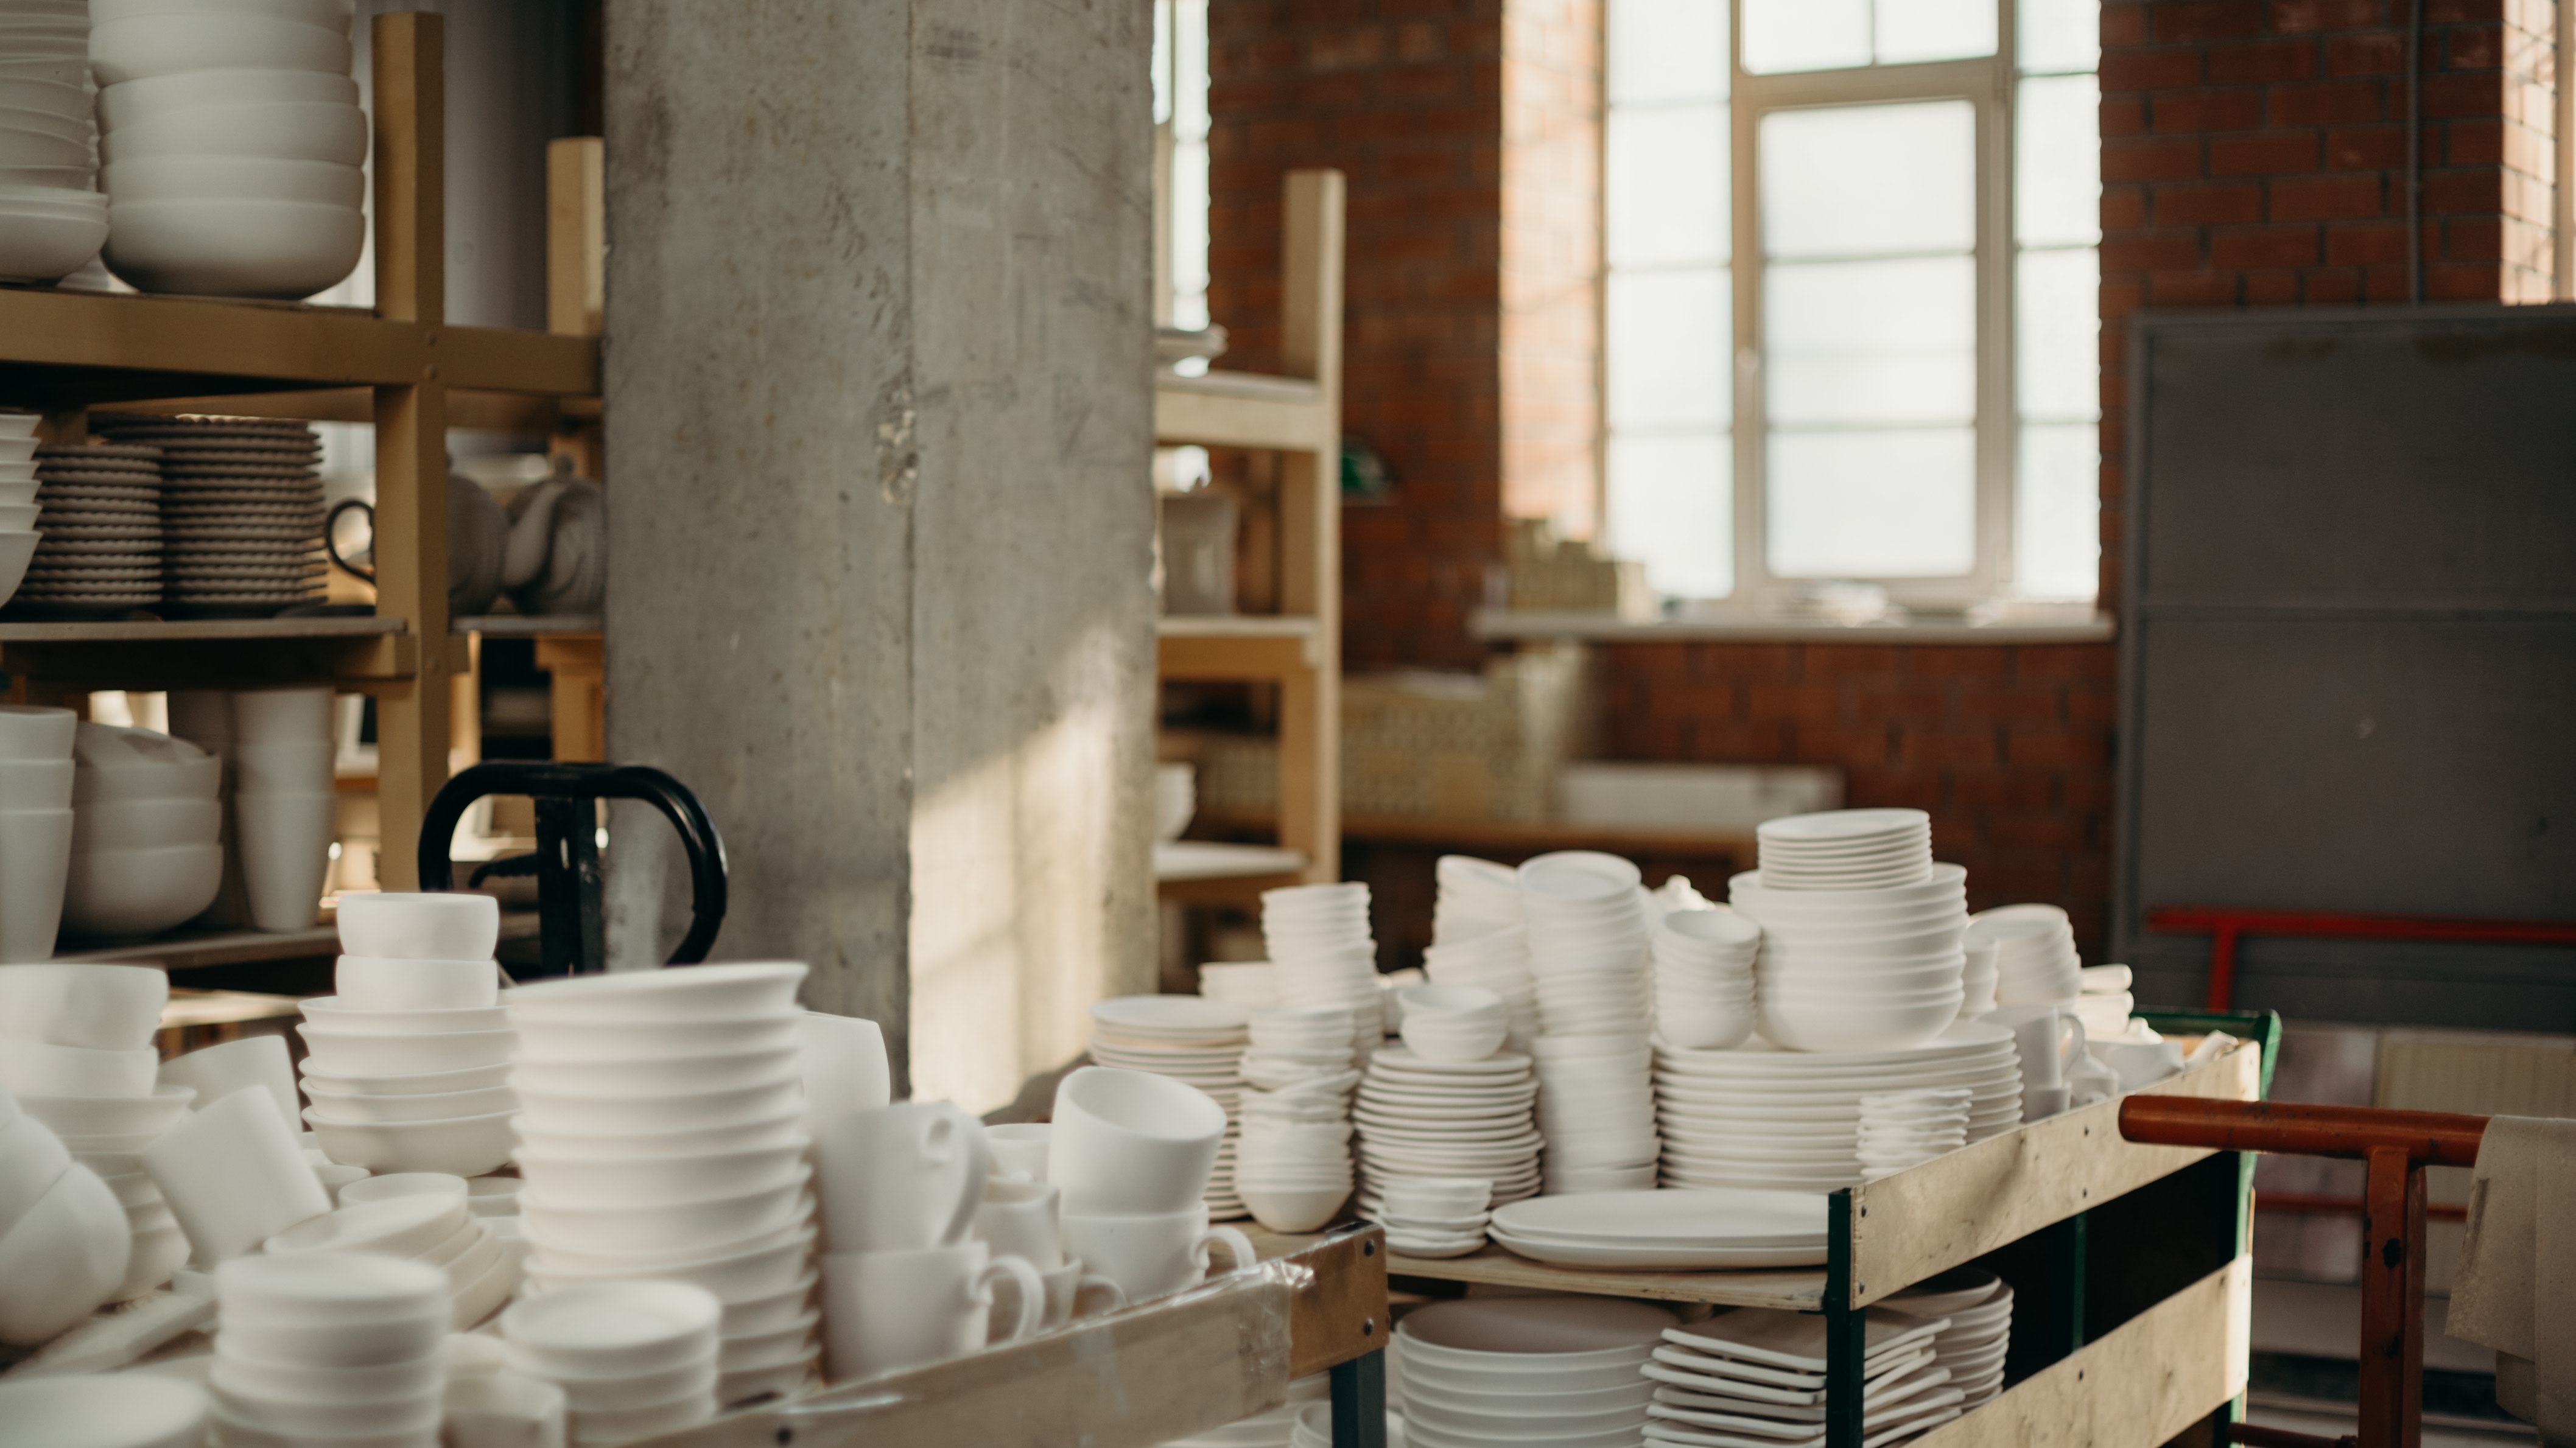 Ouvrir son atelier de poterie et céramique : mode d'emploi